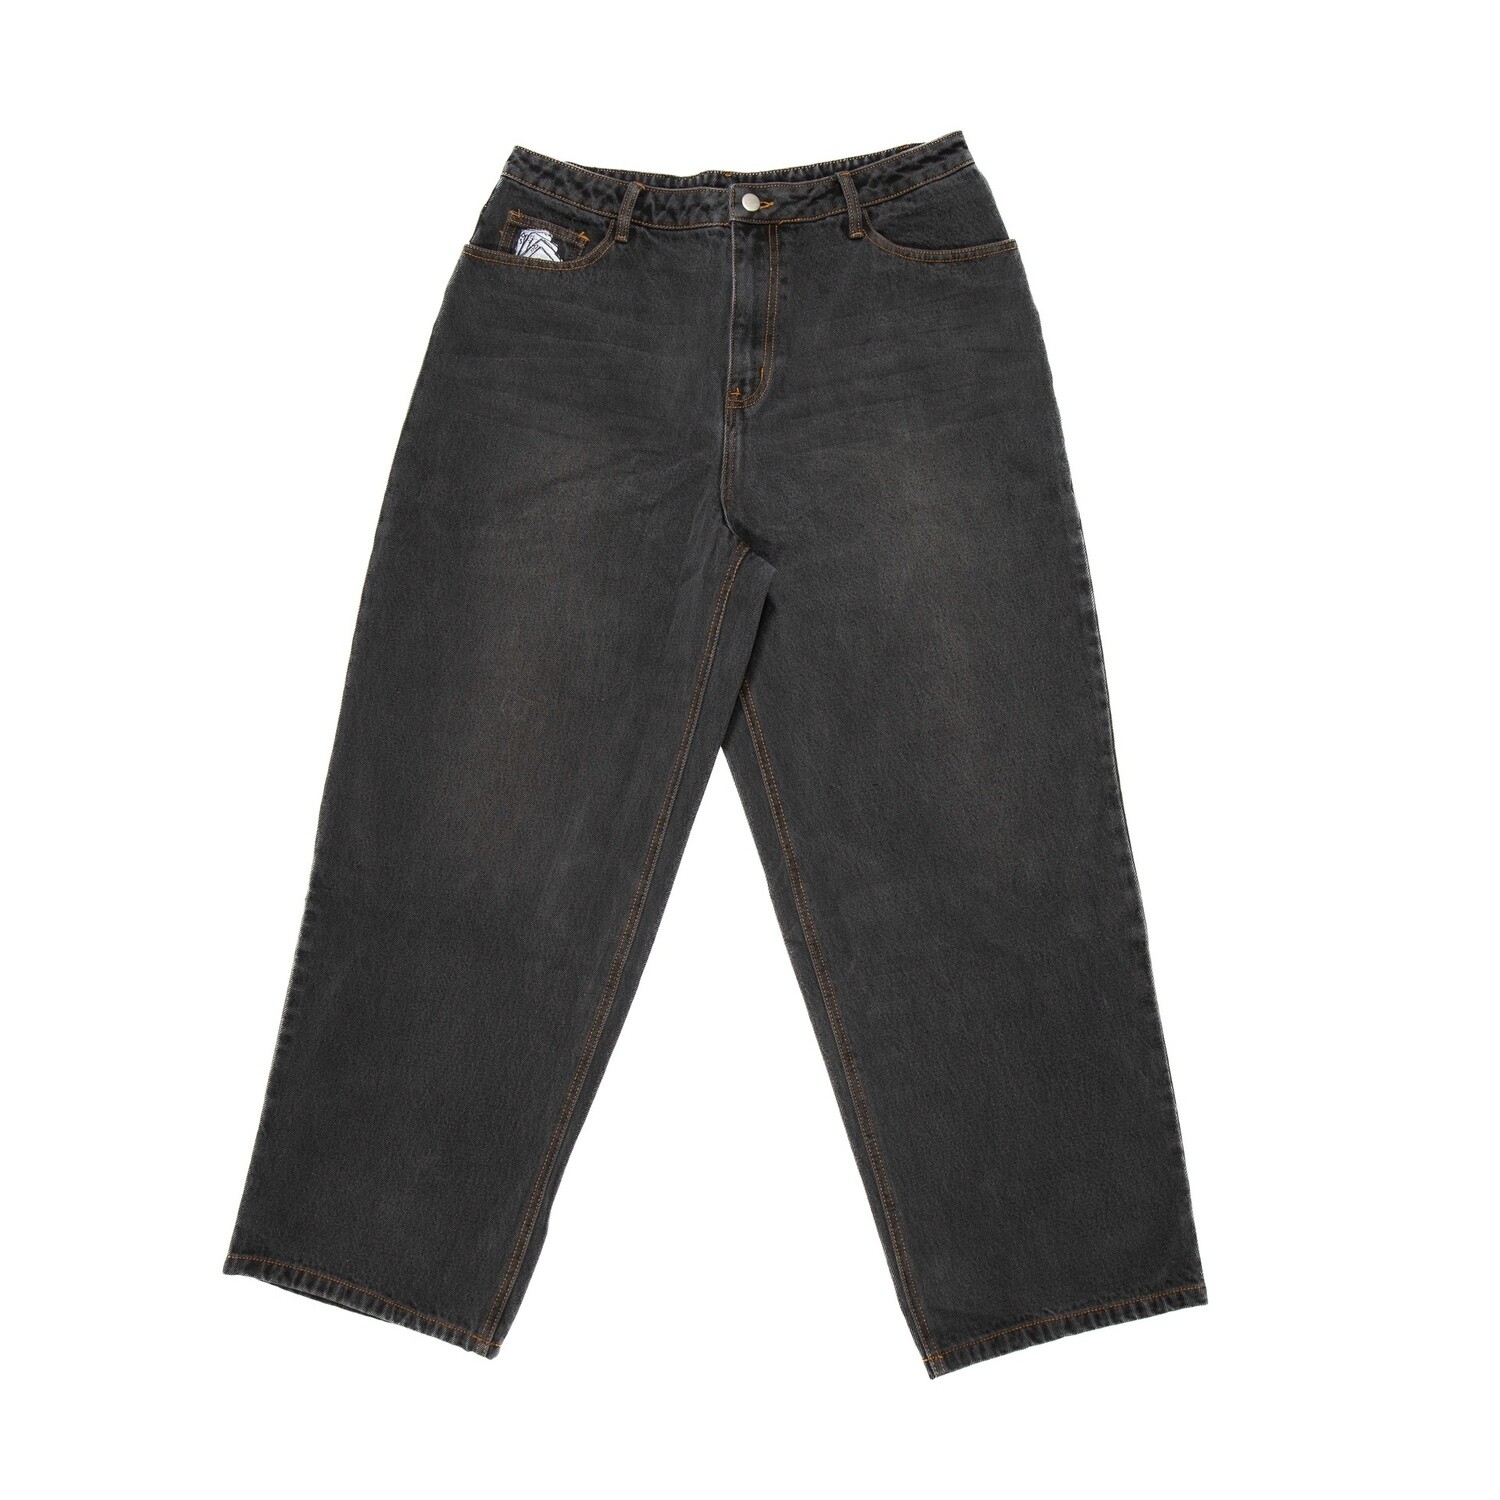 South Shore Rider Baggy Pants, Colour: Noir, Size: X-Small